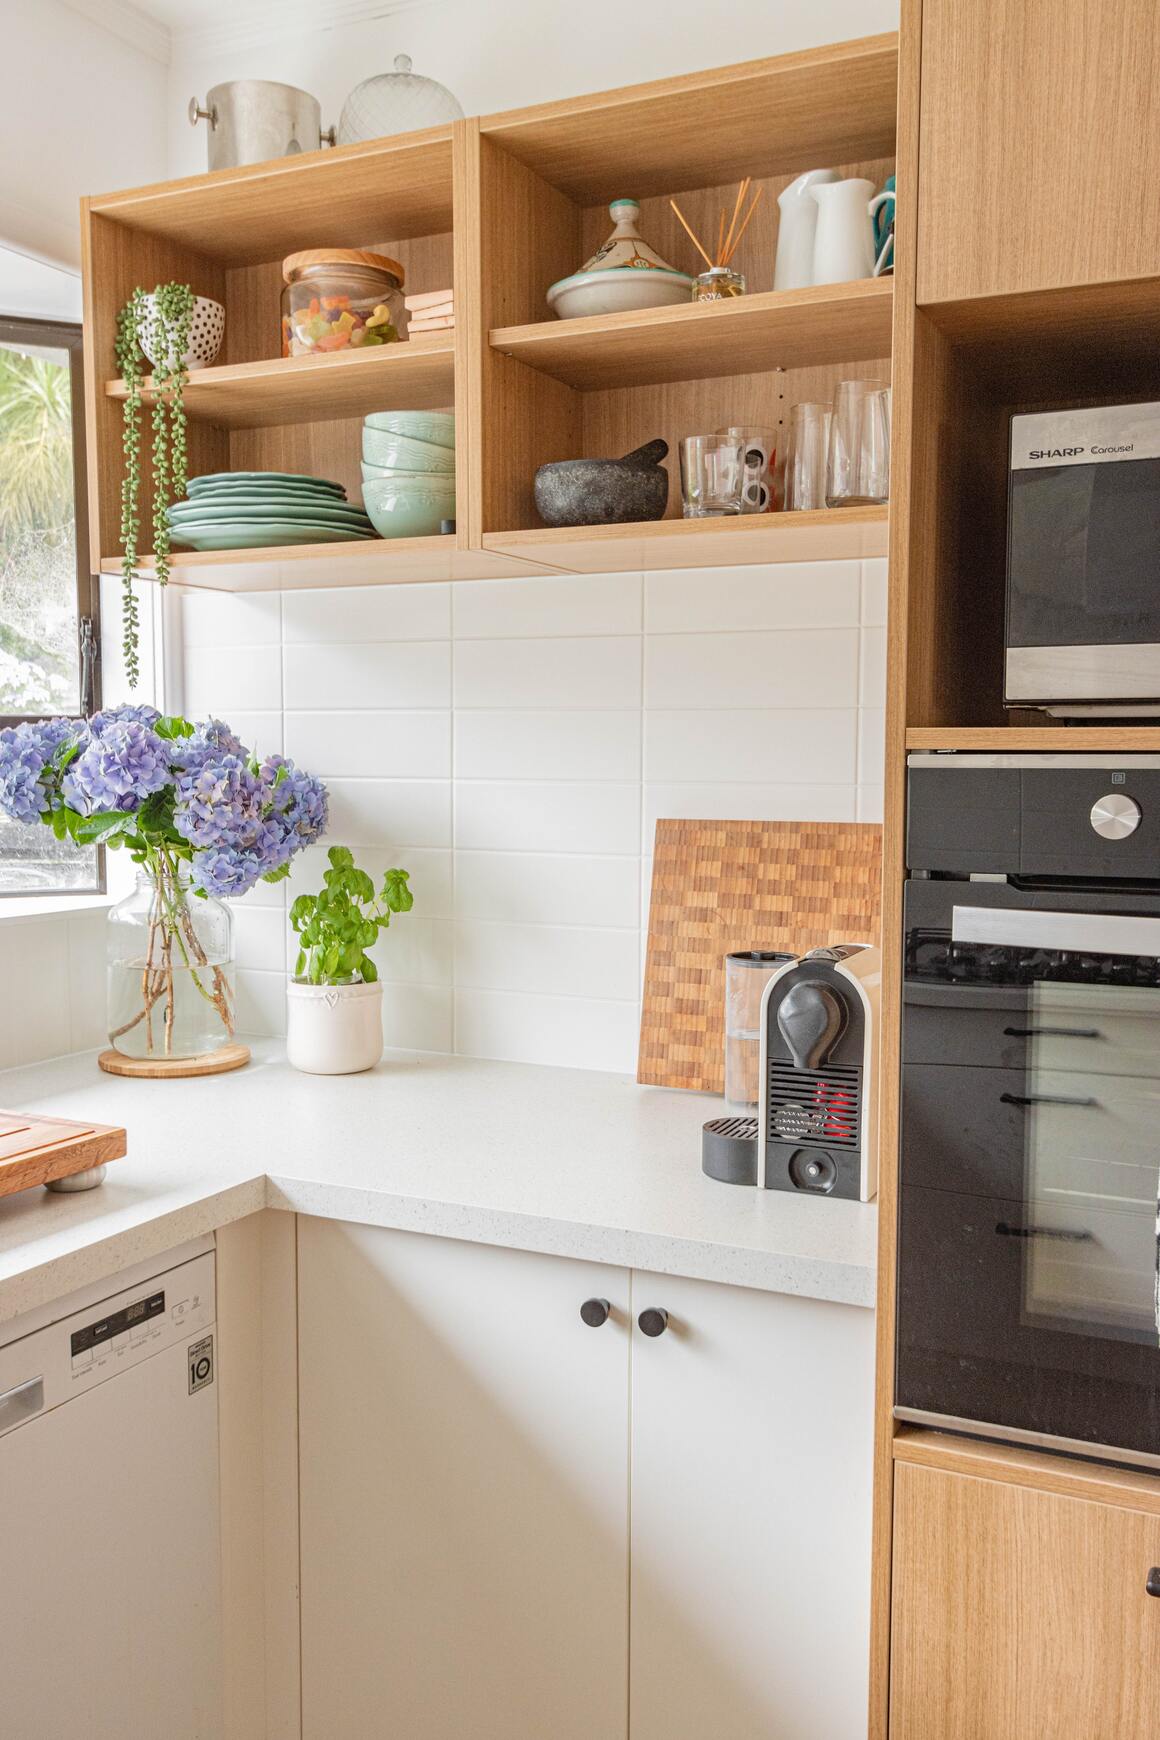 Weiss-hölzerne Küche mit einer kleinen Pflanze in der Ecke der weissen Arbeitsfläche und einem Strauss Blumen am selben Ort